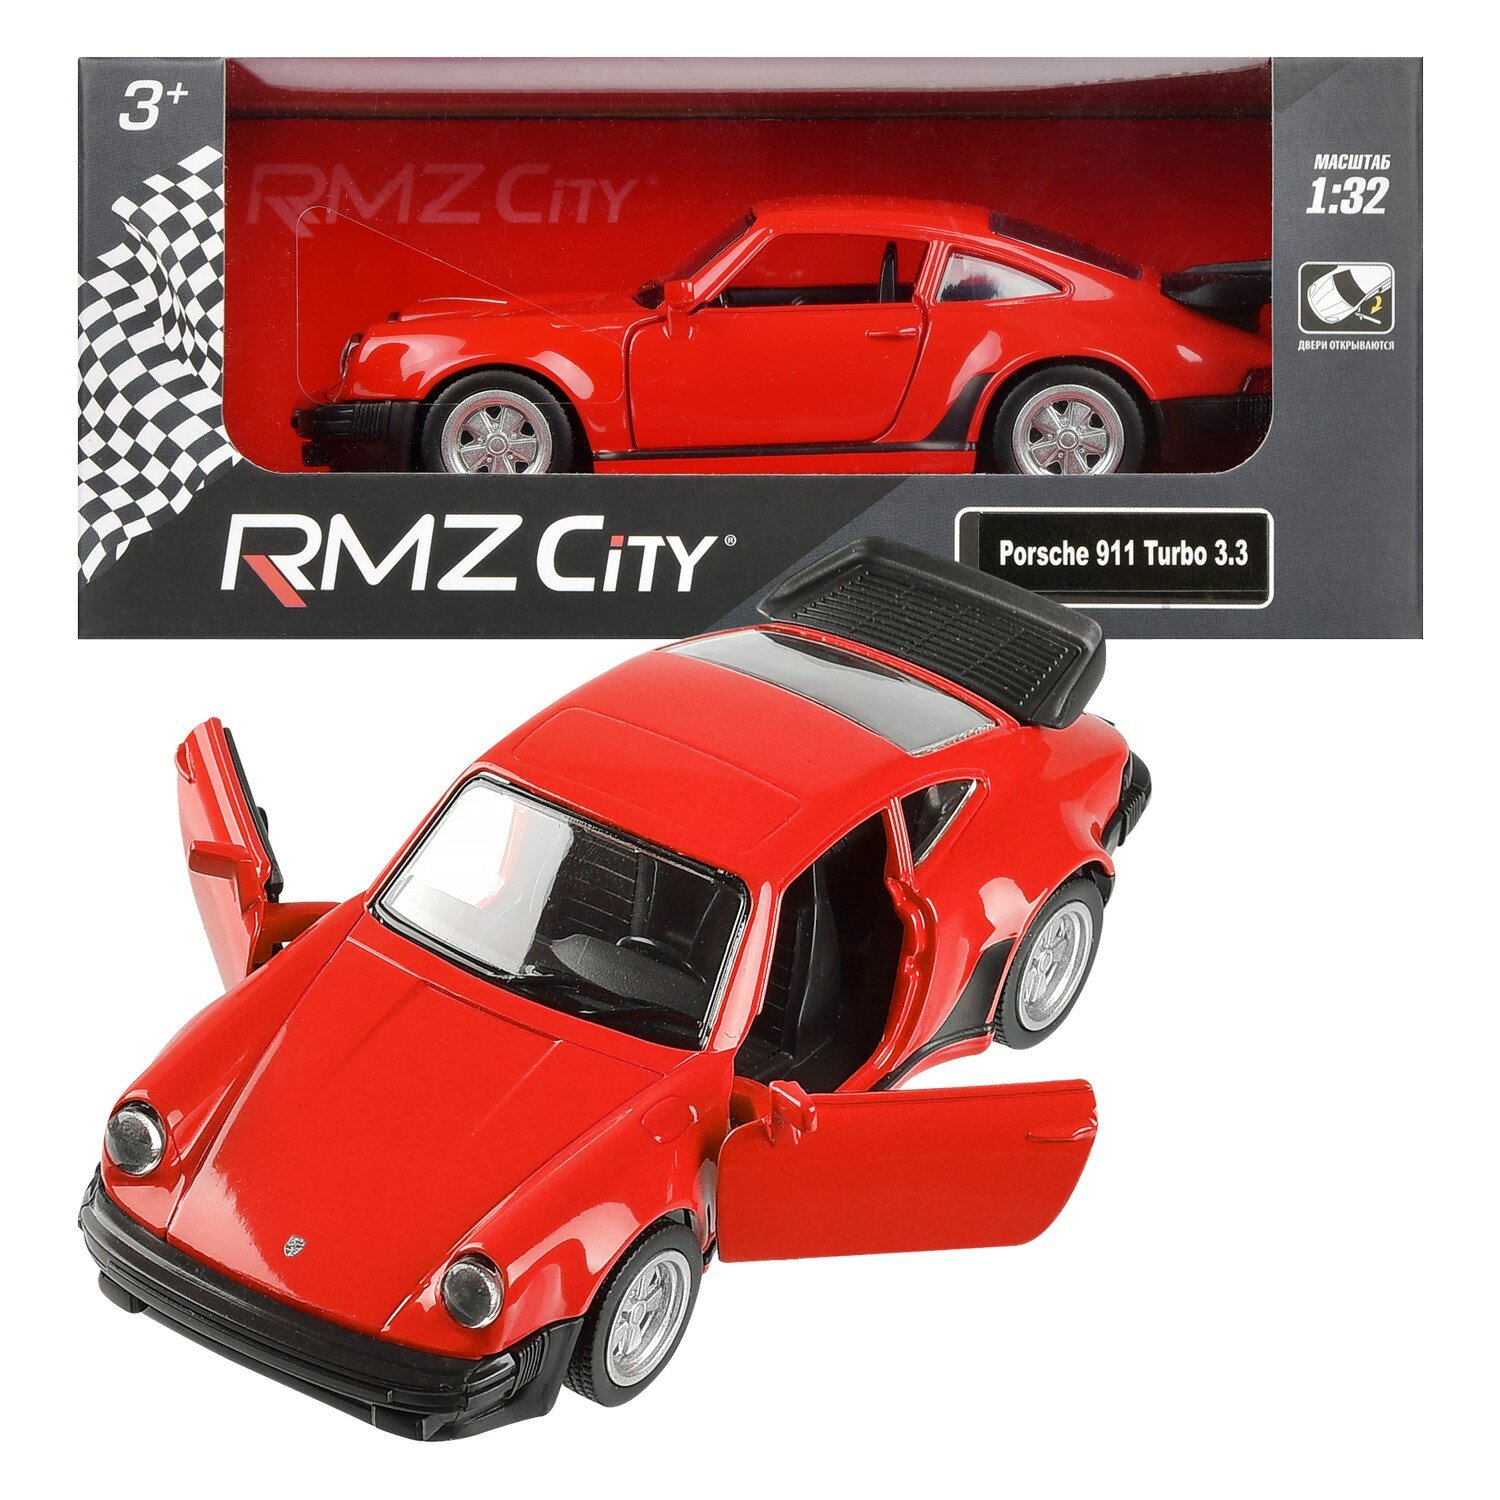 Машина Uni-Fortune "RMZ City", Porsche 930 Turbo (1975-1989), металл, масштаб 1:32, красная, инерционная, двери открываются